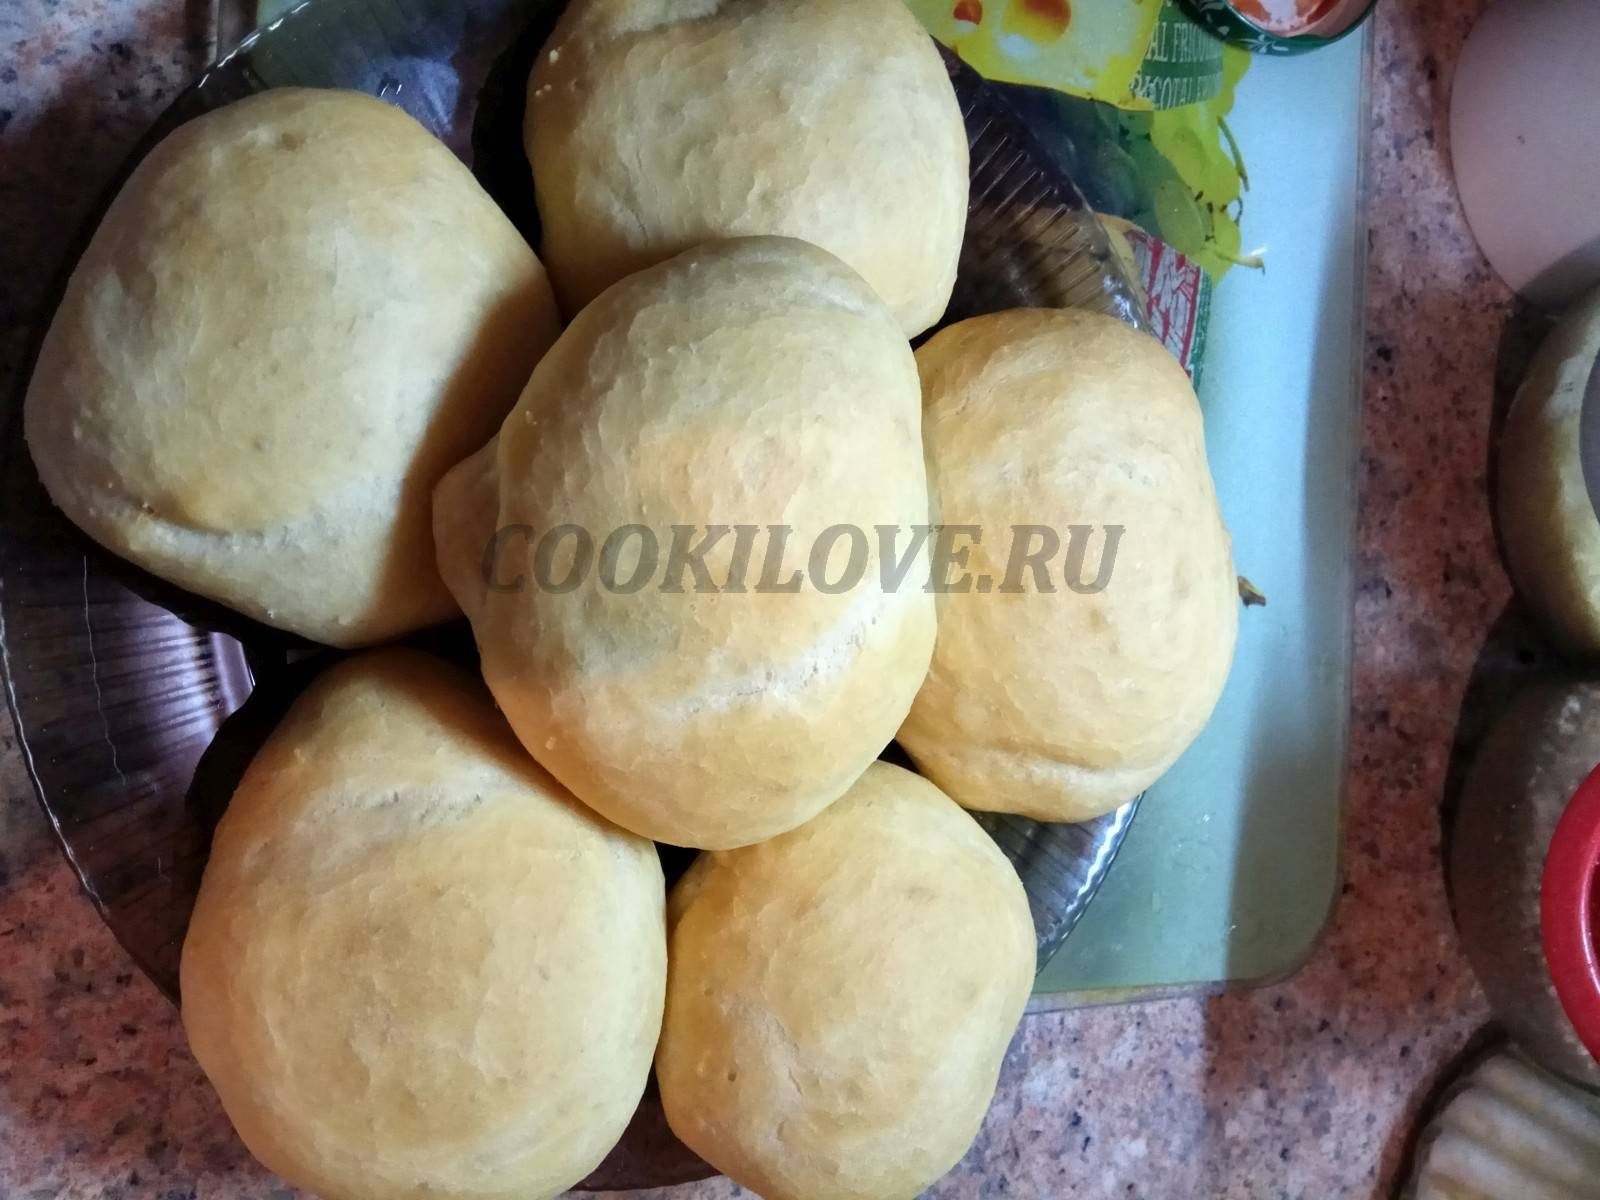 Еврейская пита или как приготовить универсальный хлеб на все случаи жизни